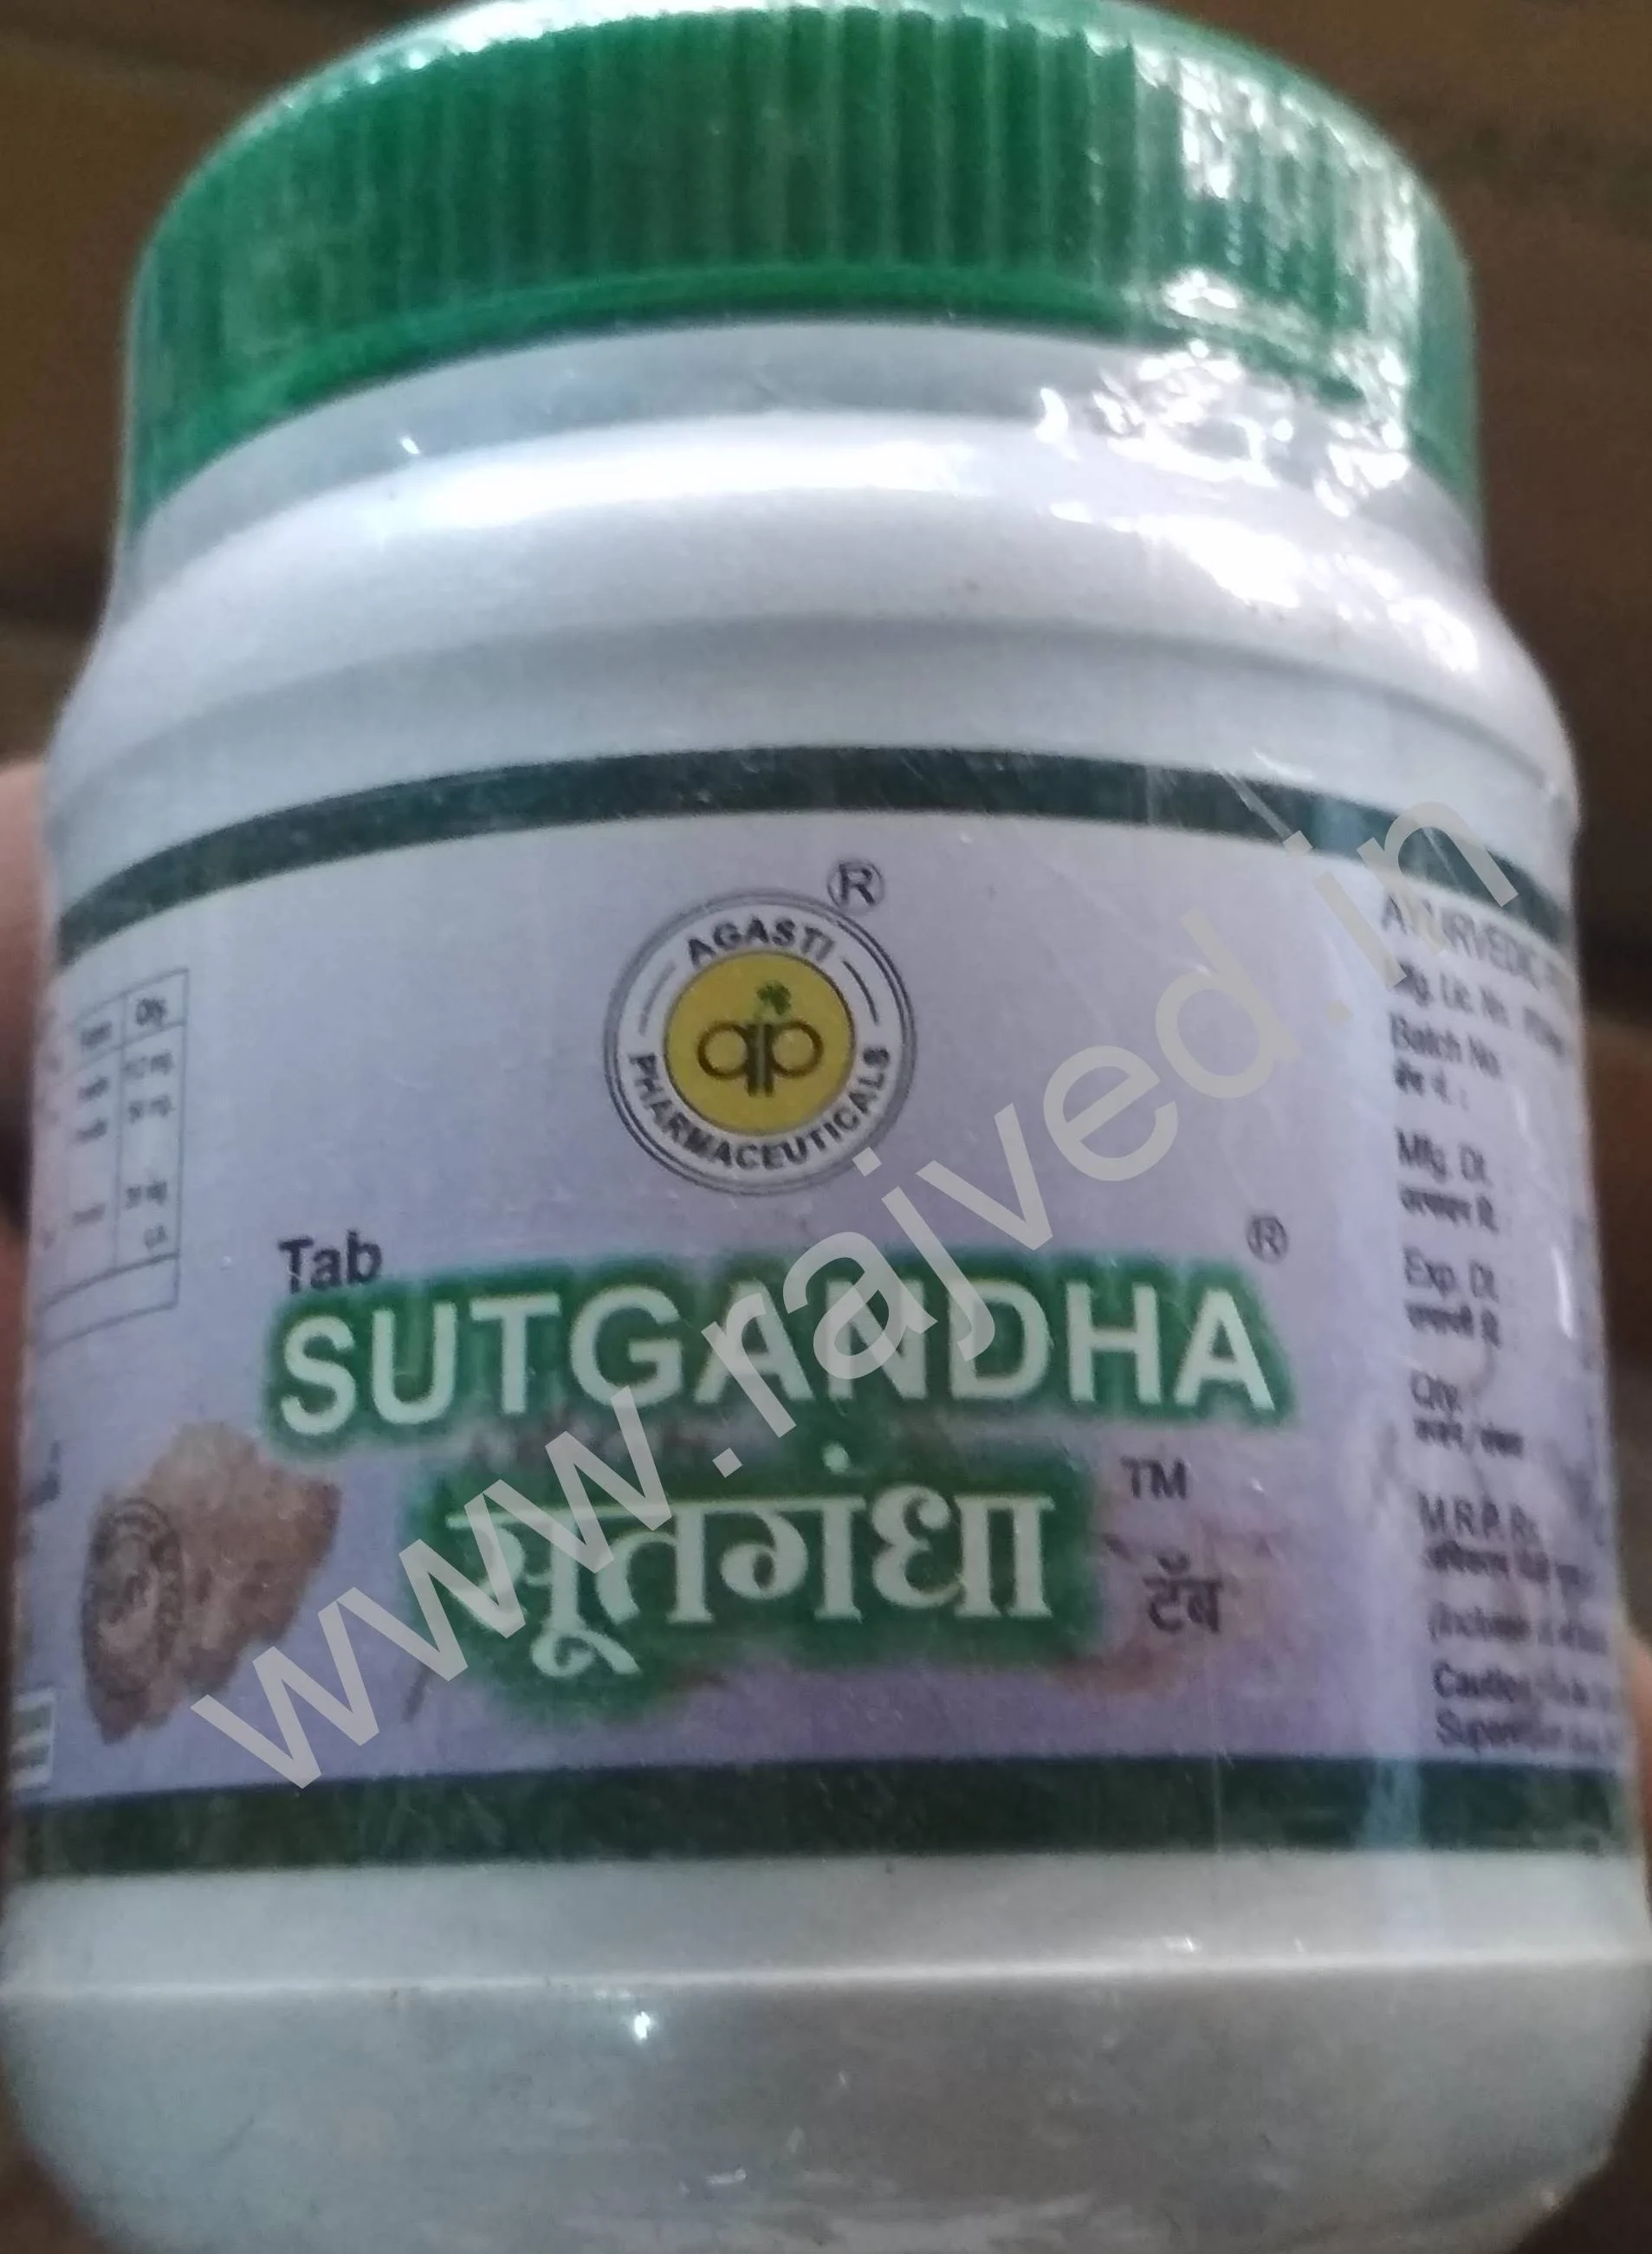 sutgandha vati 250 gm 1000 tablet agasti pharmaceuticals upto 15% off